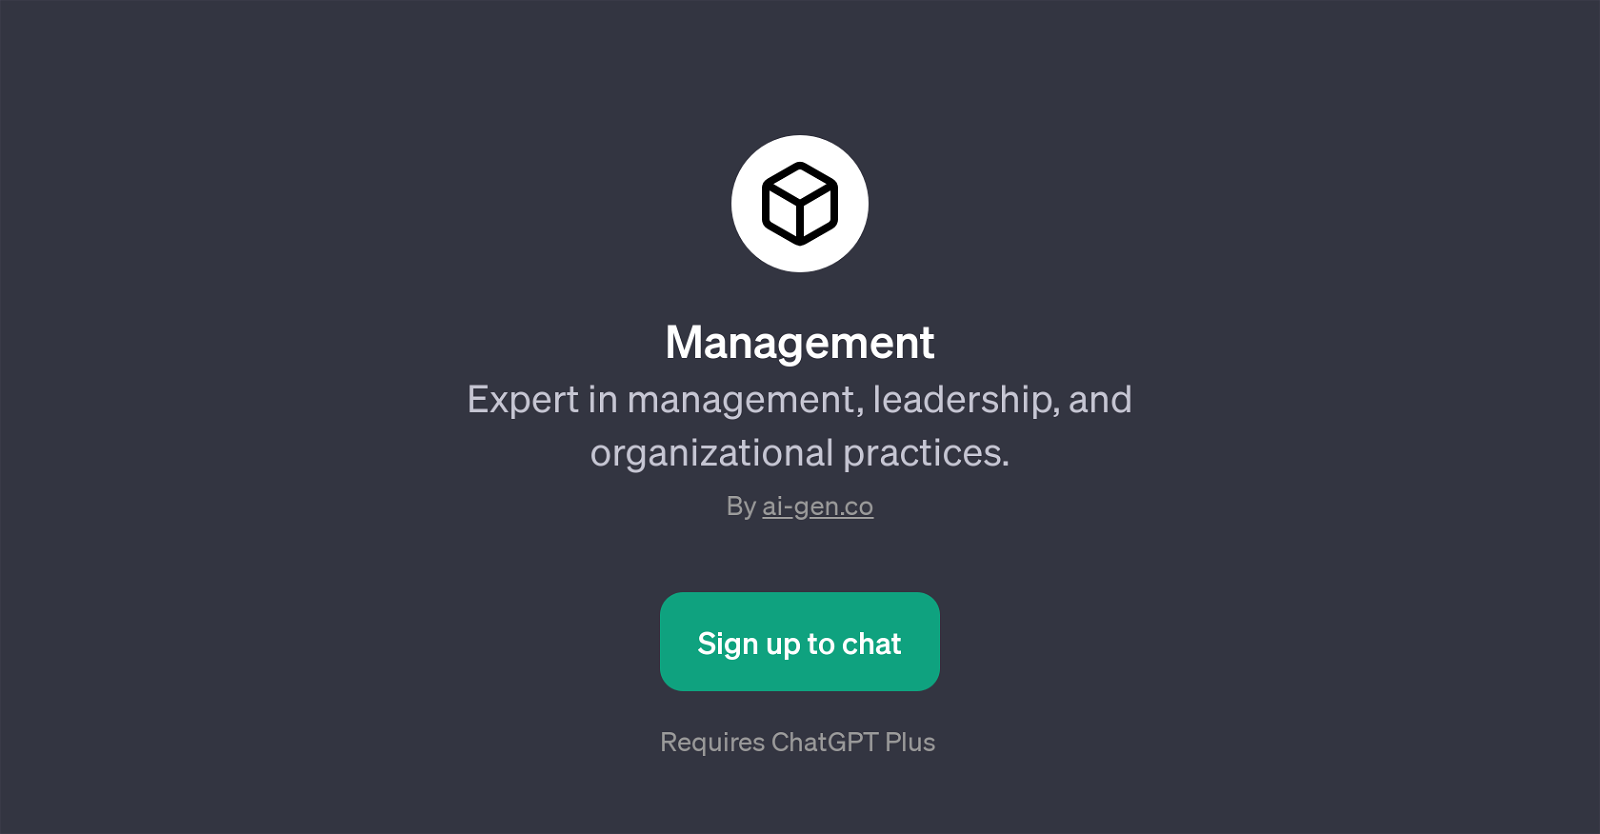 ManagementPage website